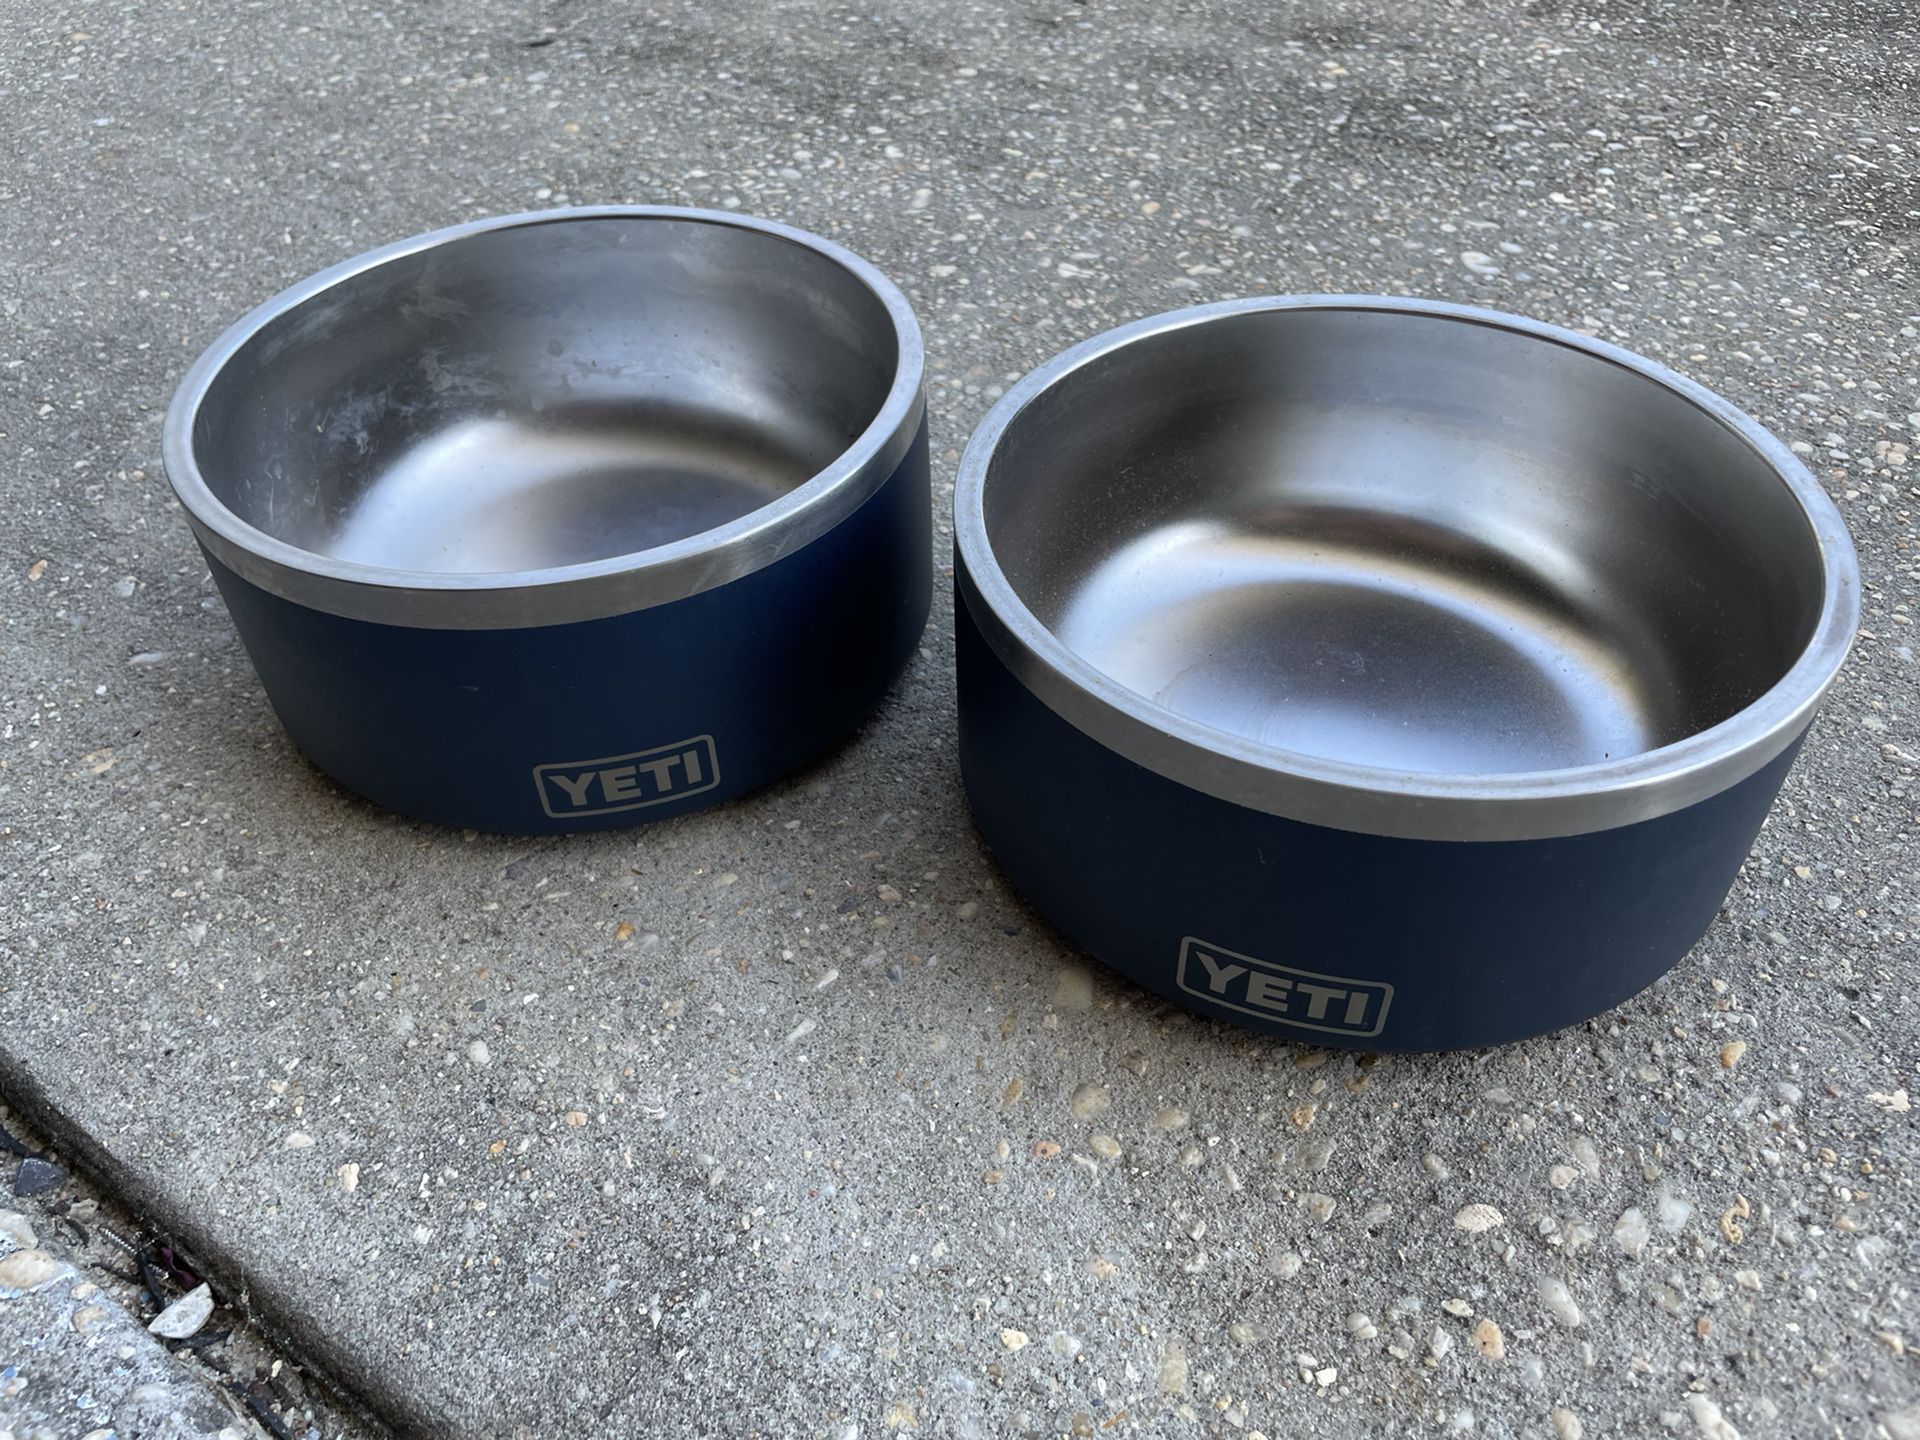 Yeti Dog Bowls (2)